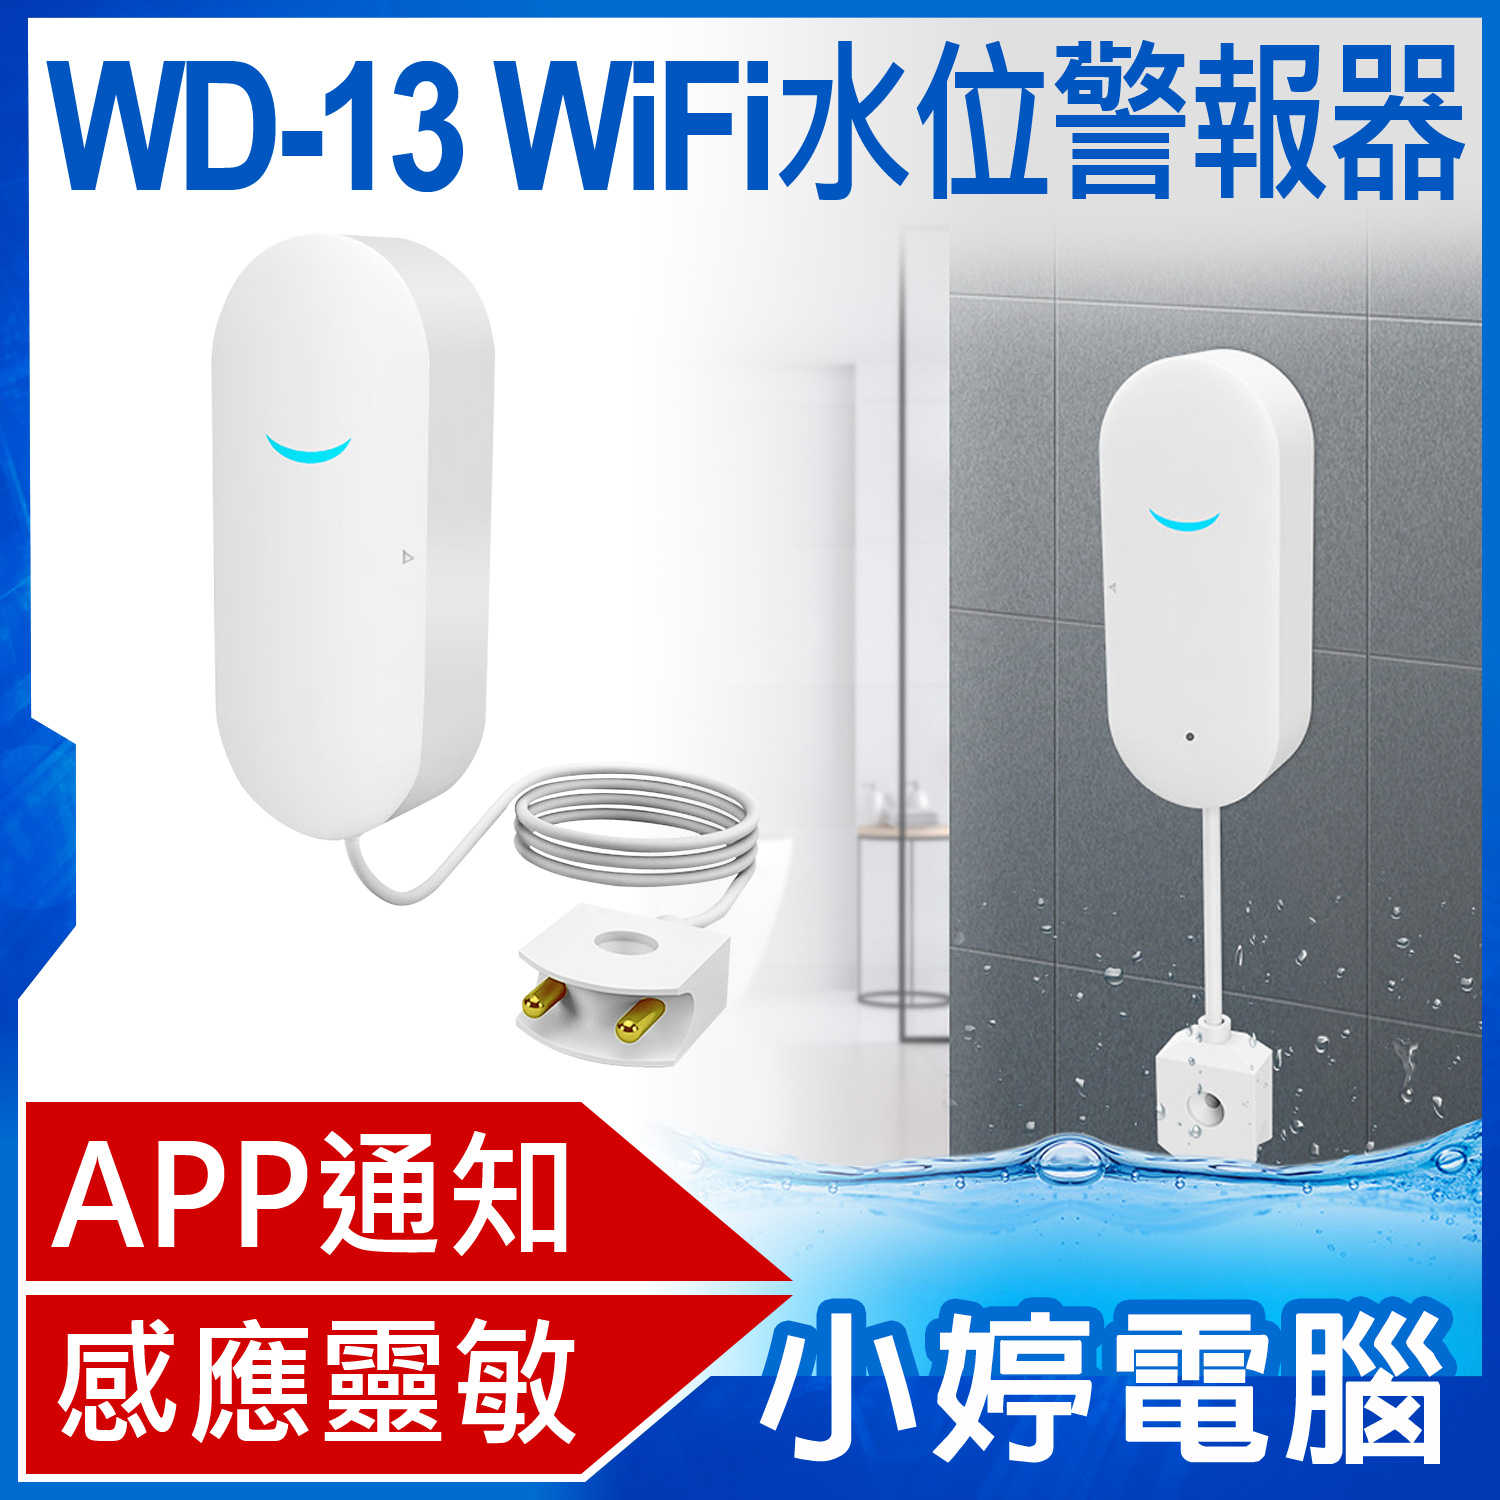 【小婷電腦】WD-13 WiFi水位警報器 APP通知提醒 感應靈敏 探測線0.75米 超強省電 安裝簡單